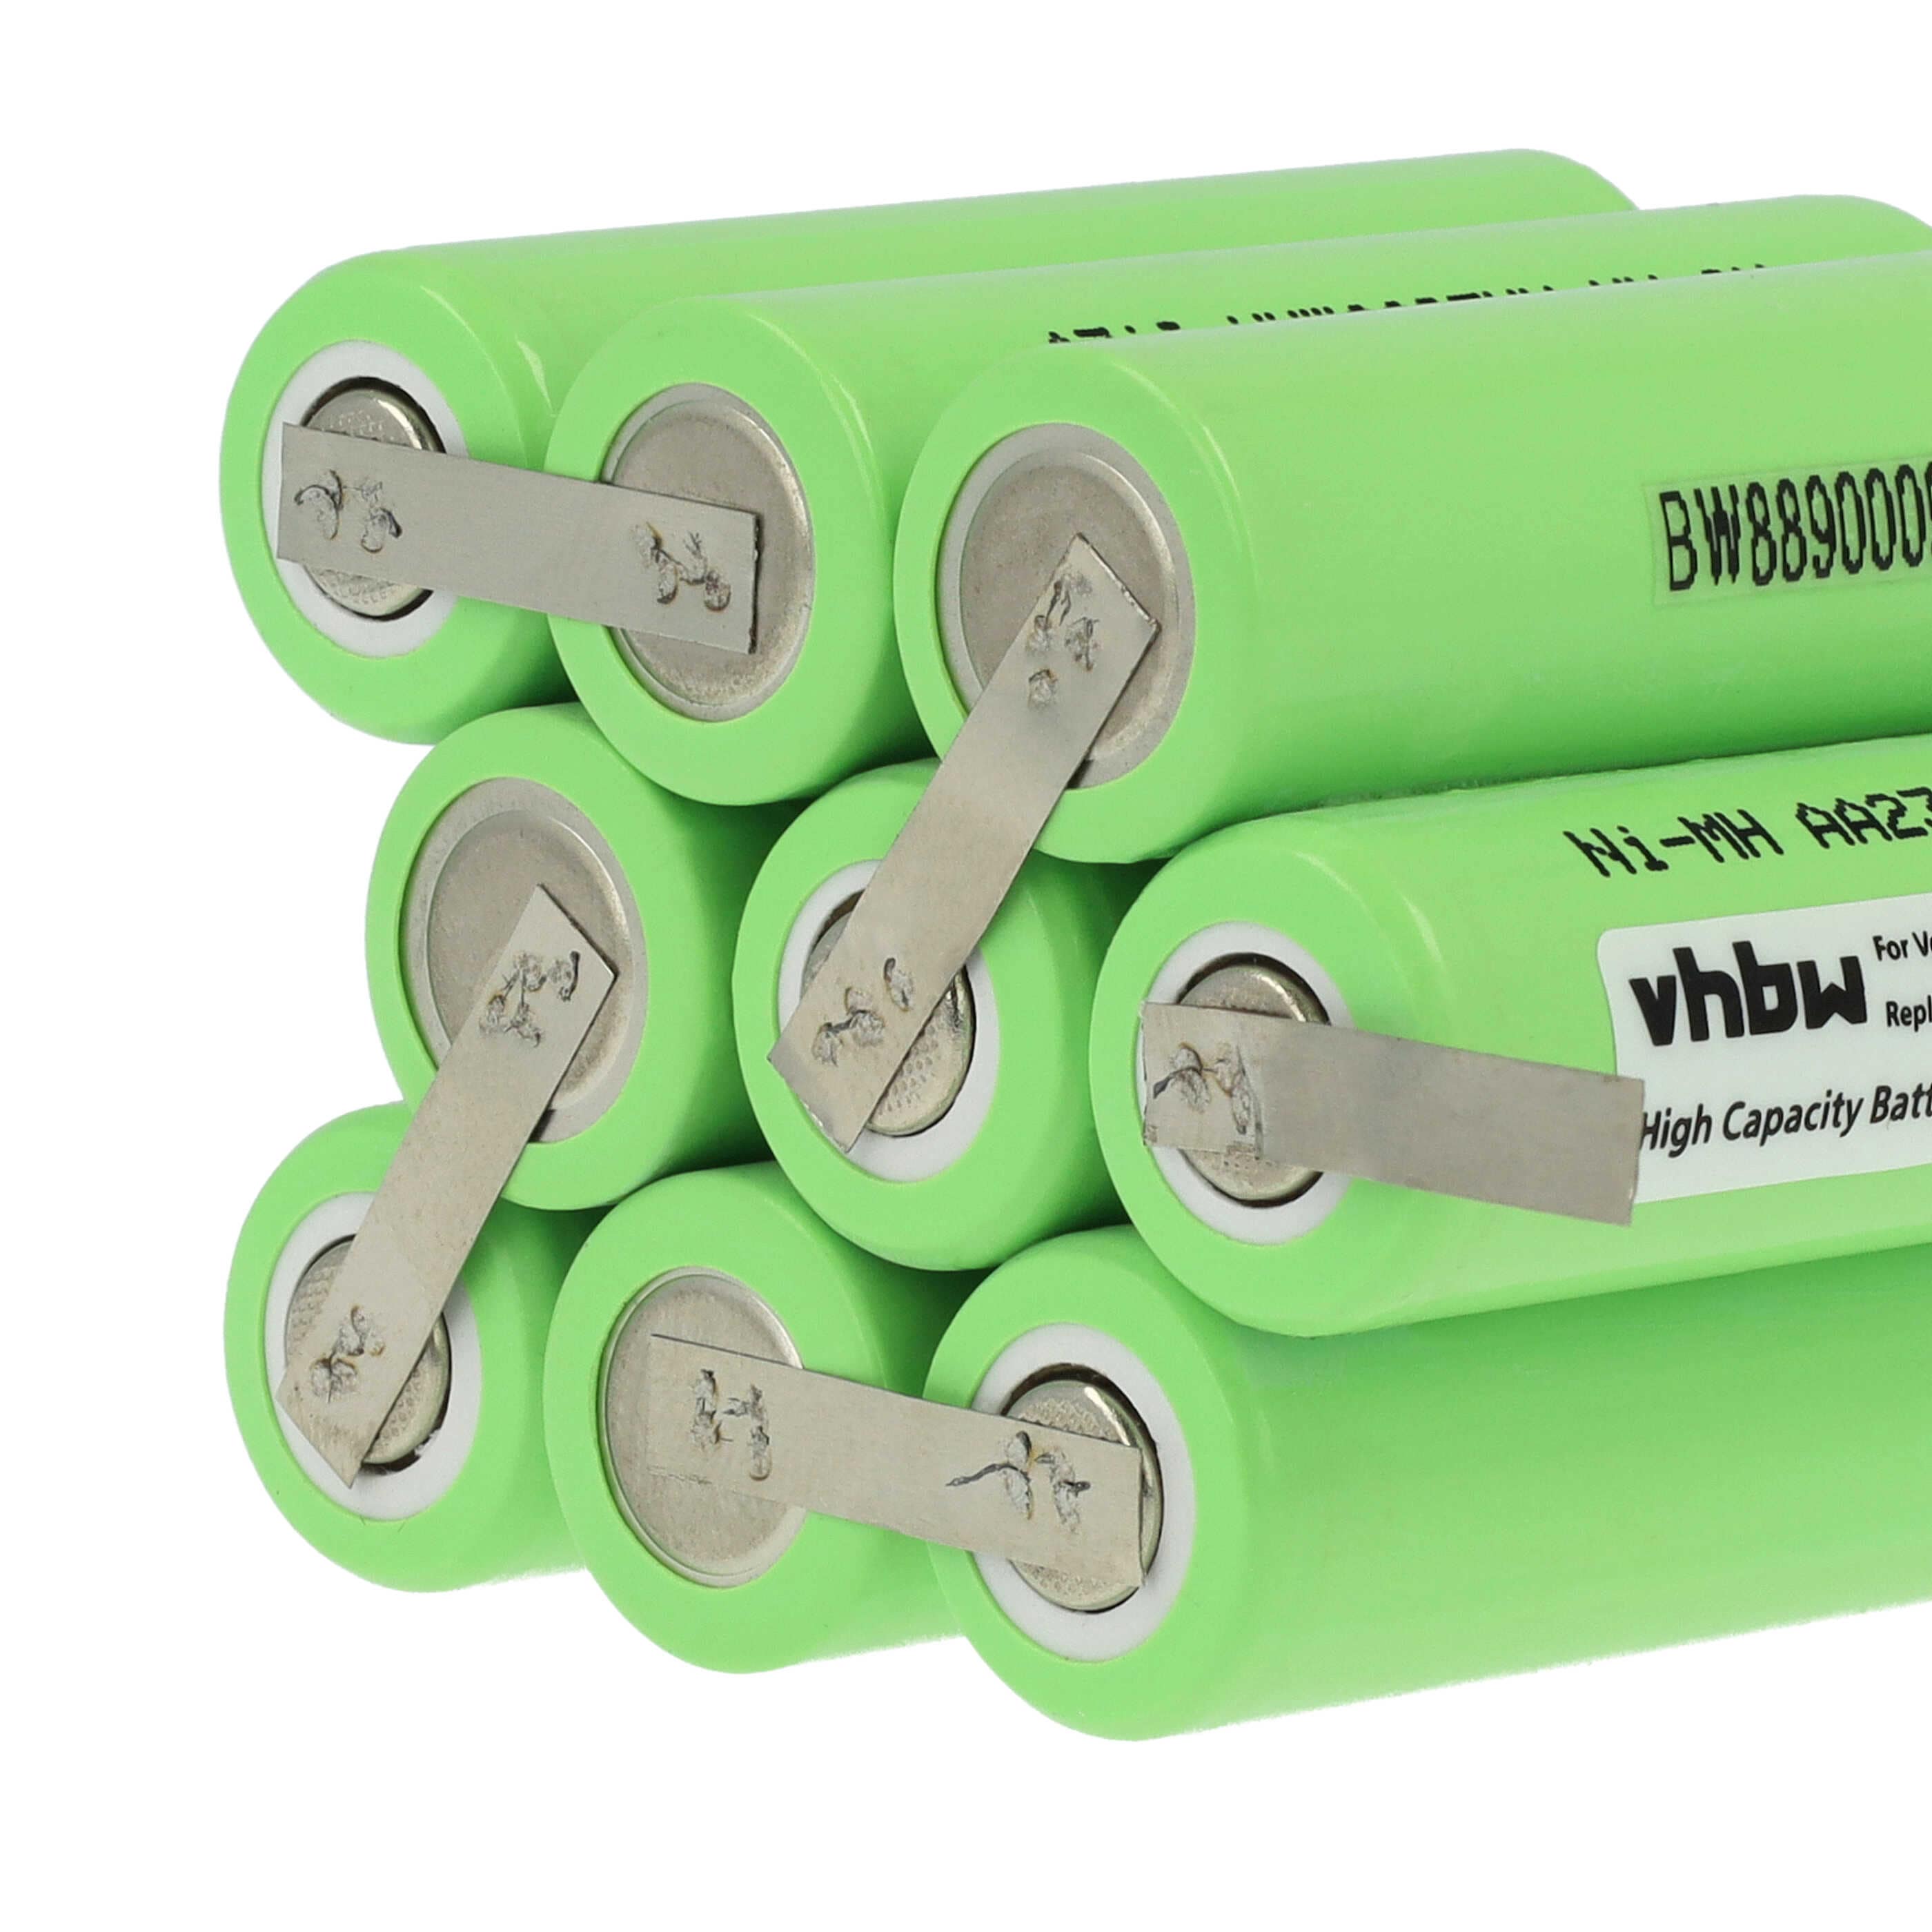 Batterie remplace 833297, 27AZ07BH, 3SD B01 WW pour store volet de fenêtre - 2300mAh 10,8V NiMH